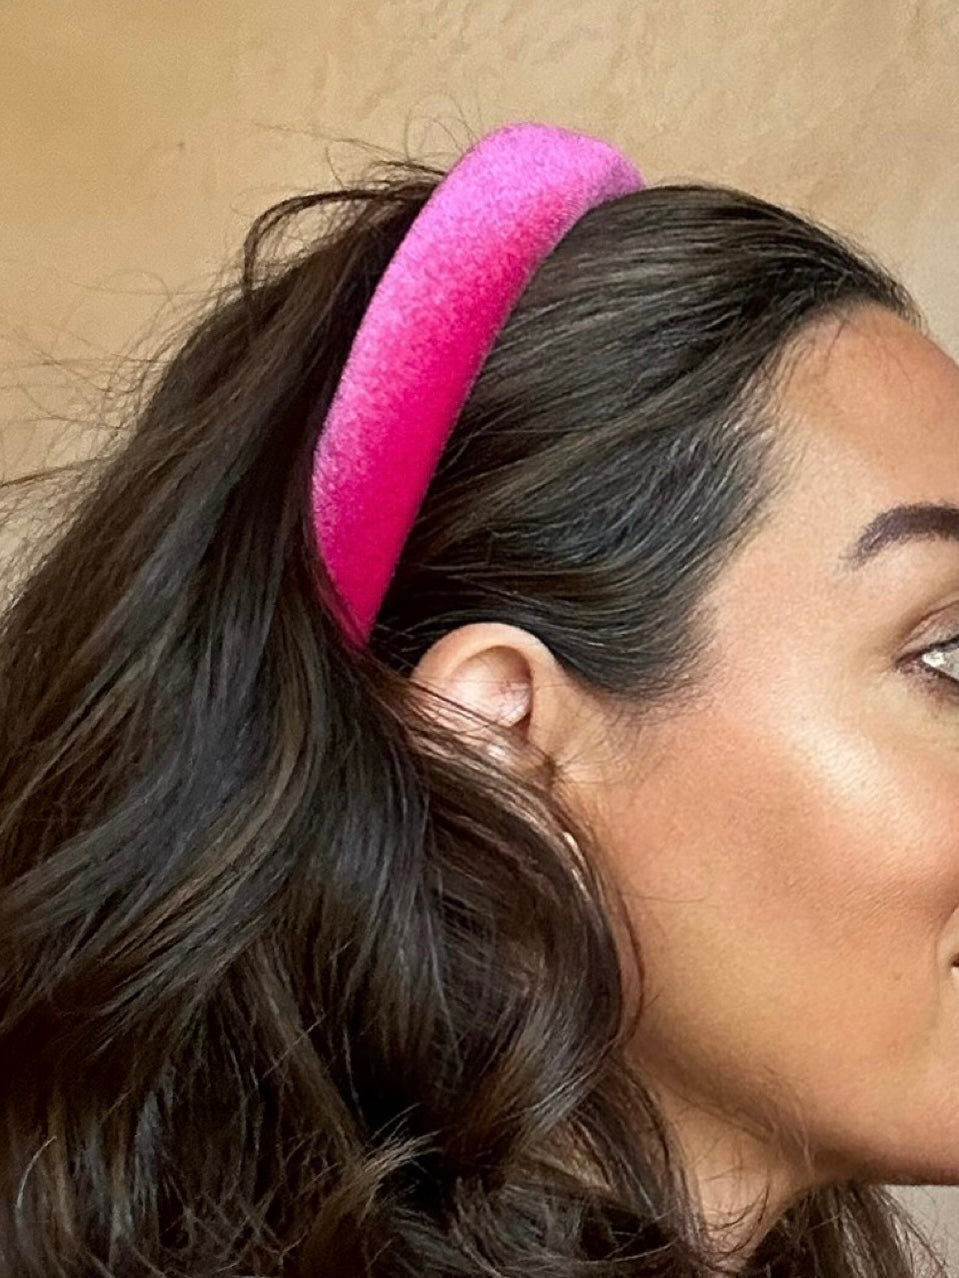 Velvet 'Versaille' Paris Pink Headband